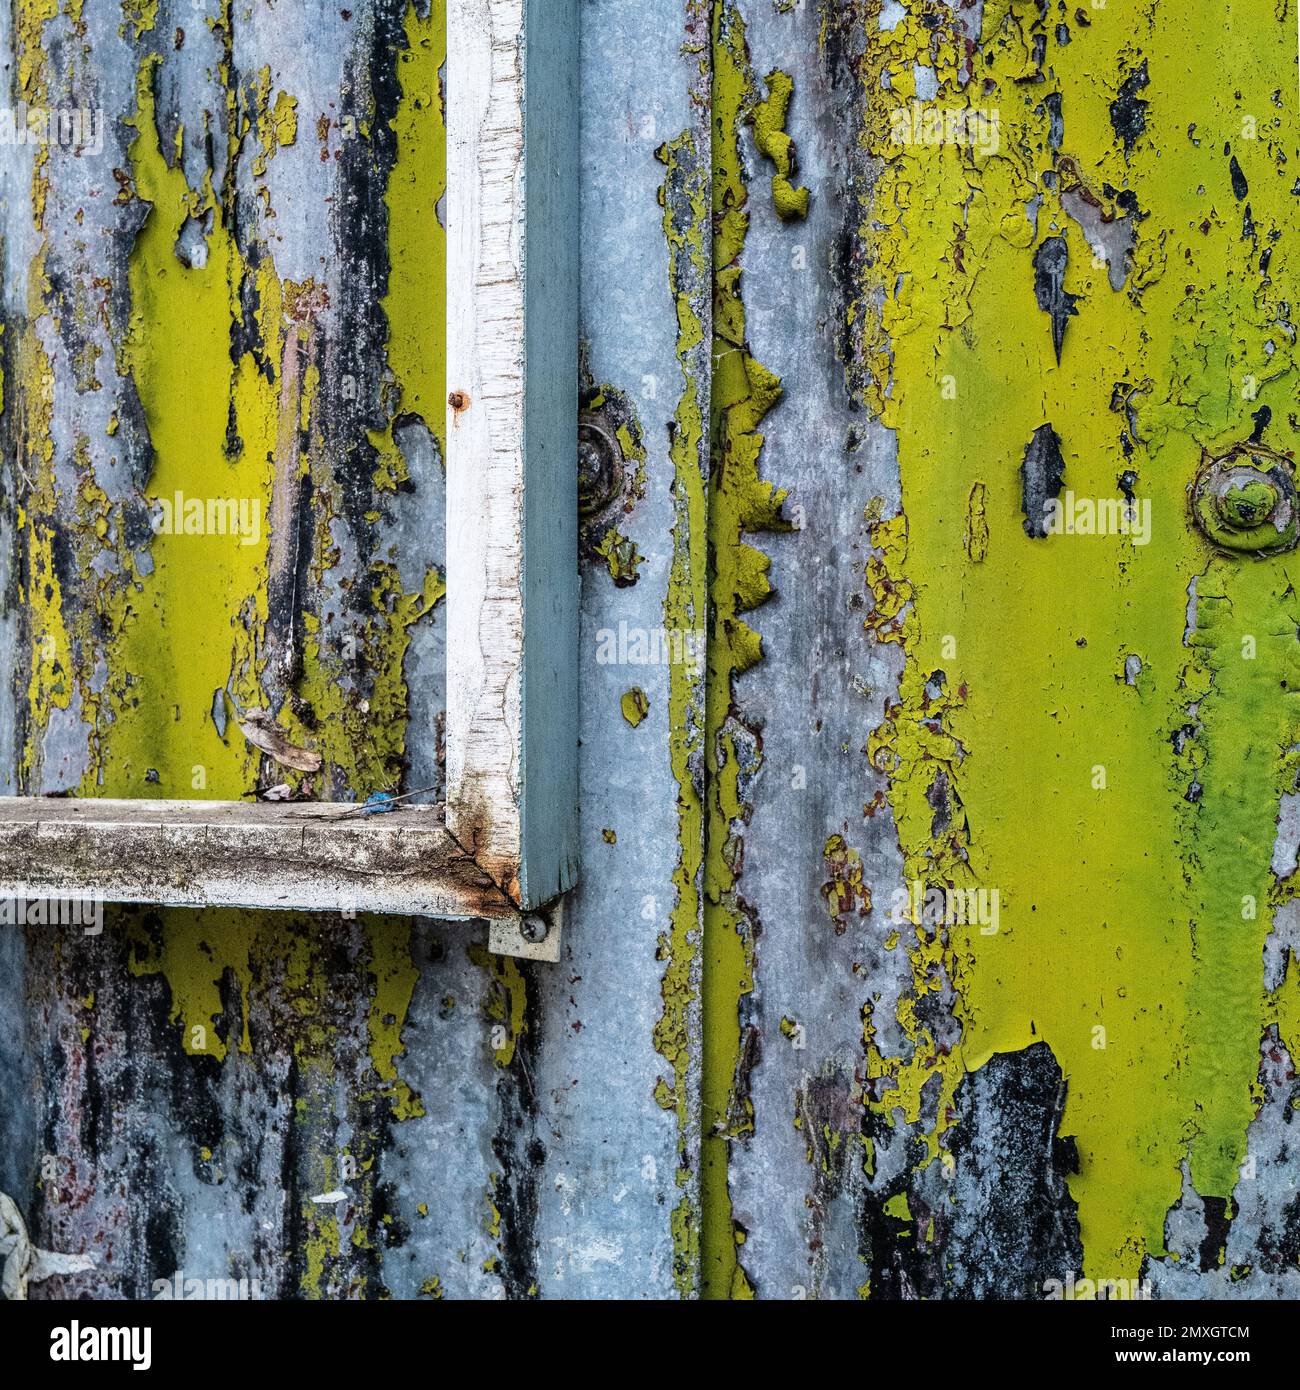 Revestimiento de chapa metálica de aluminio corrugado con incrustaciones de  color oxidado Fotografía de stock - Alamy